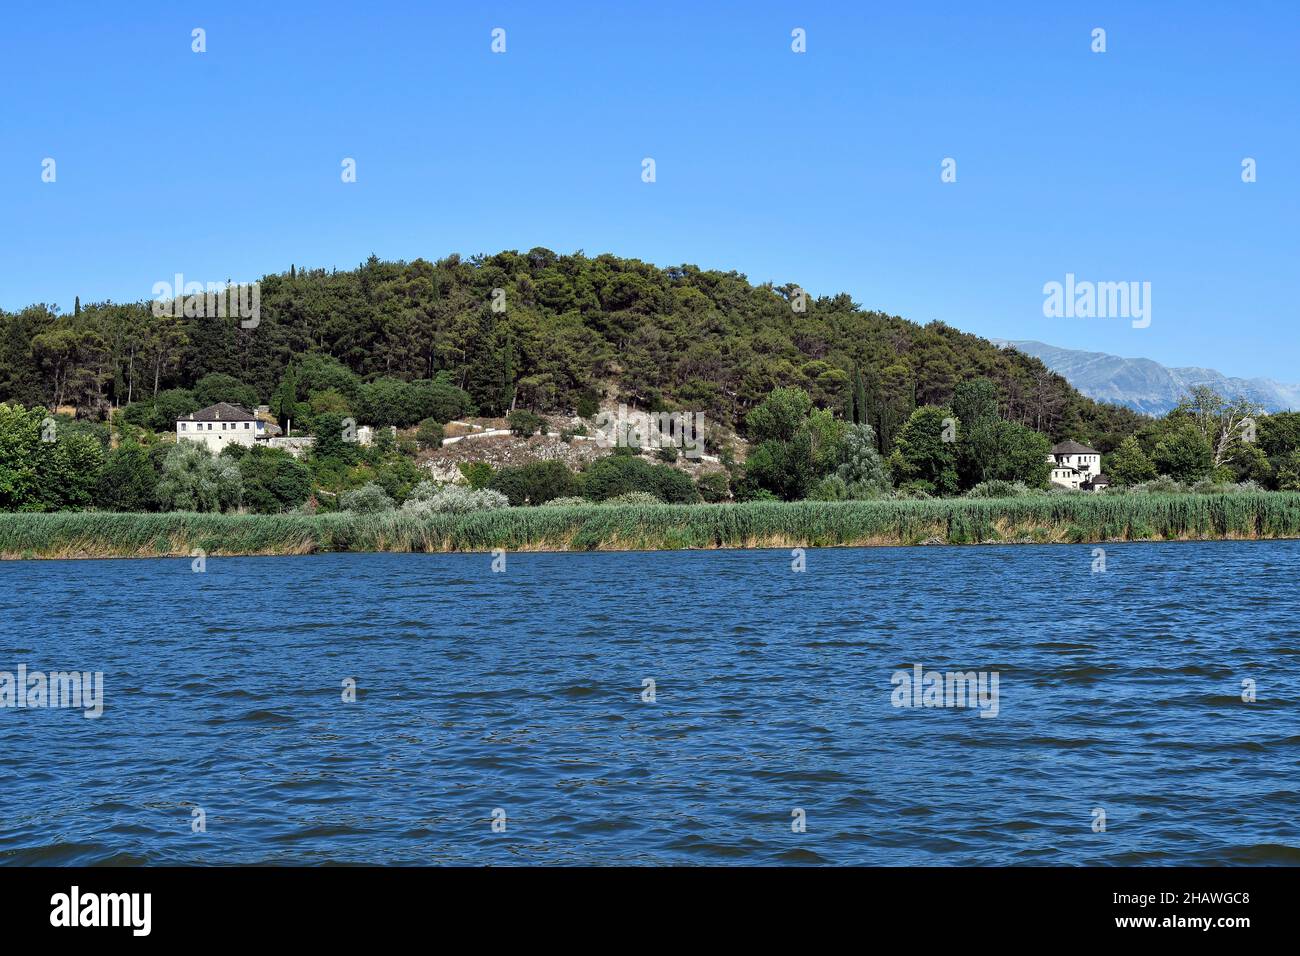 Griechenland, Ioannina, Blick auf die kleine Insel im Pamvotida-See mit alten Klöstern Stockfoto